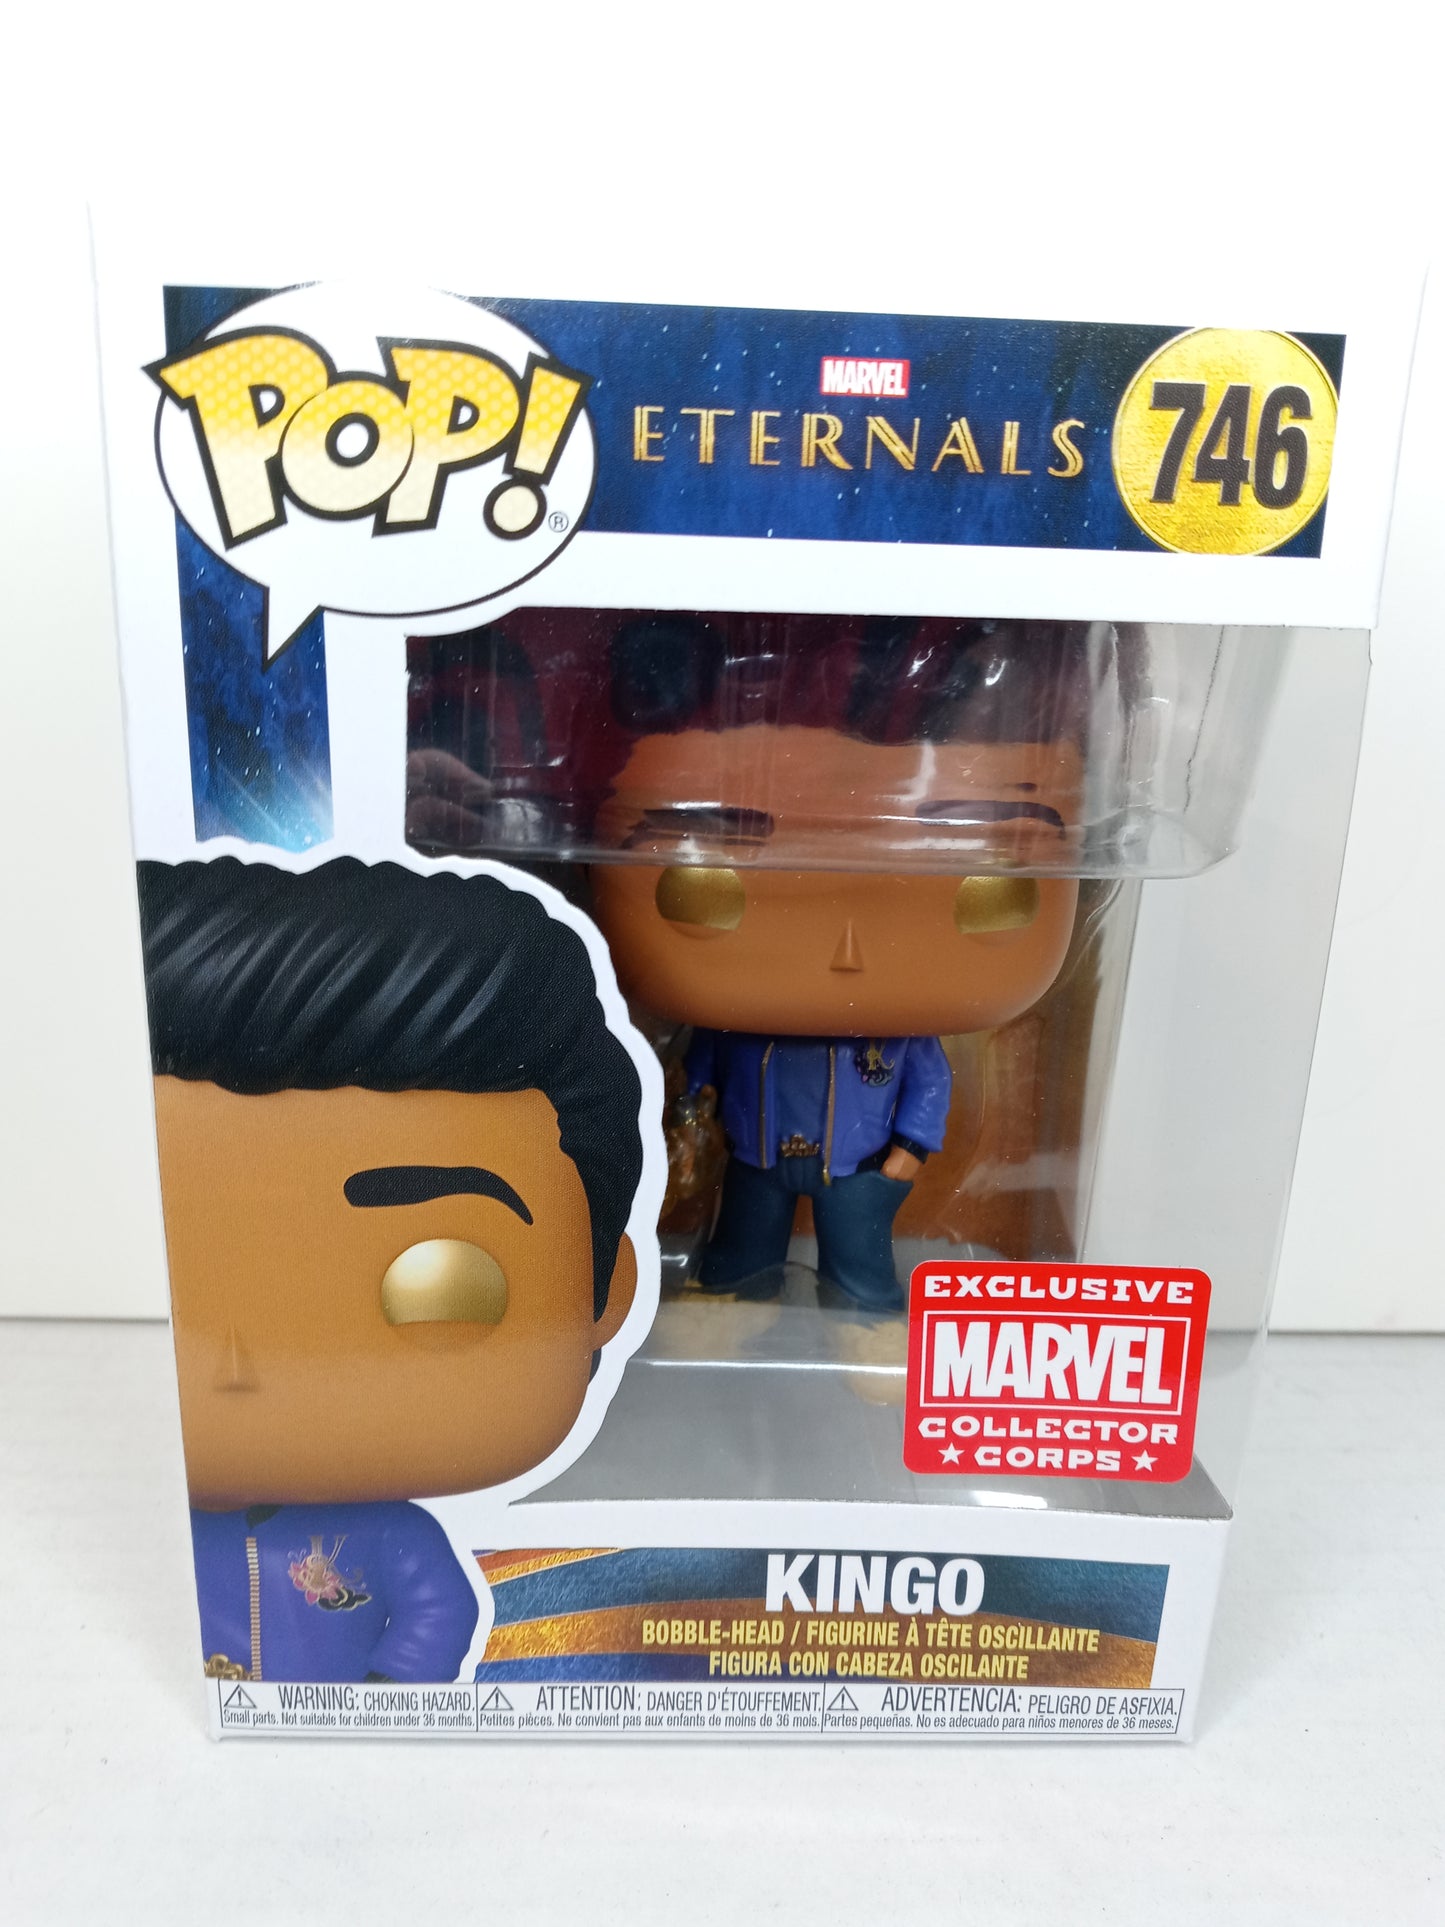 POP! Marvel 746 Eternals - Kingo Marvel Collector Corps Exclusive